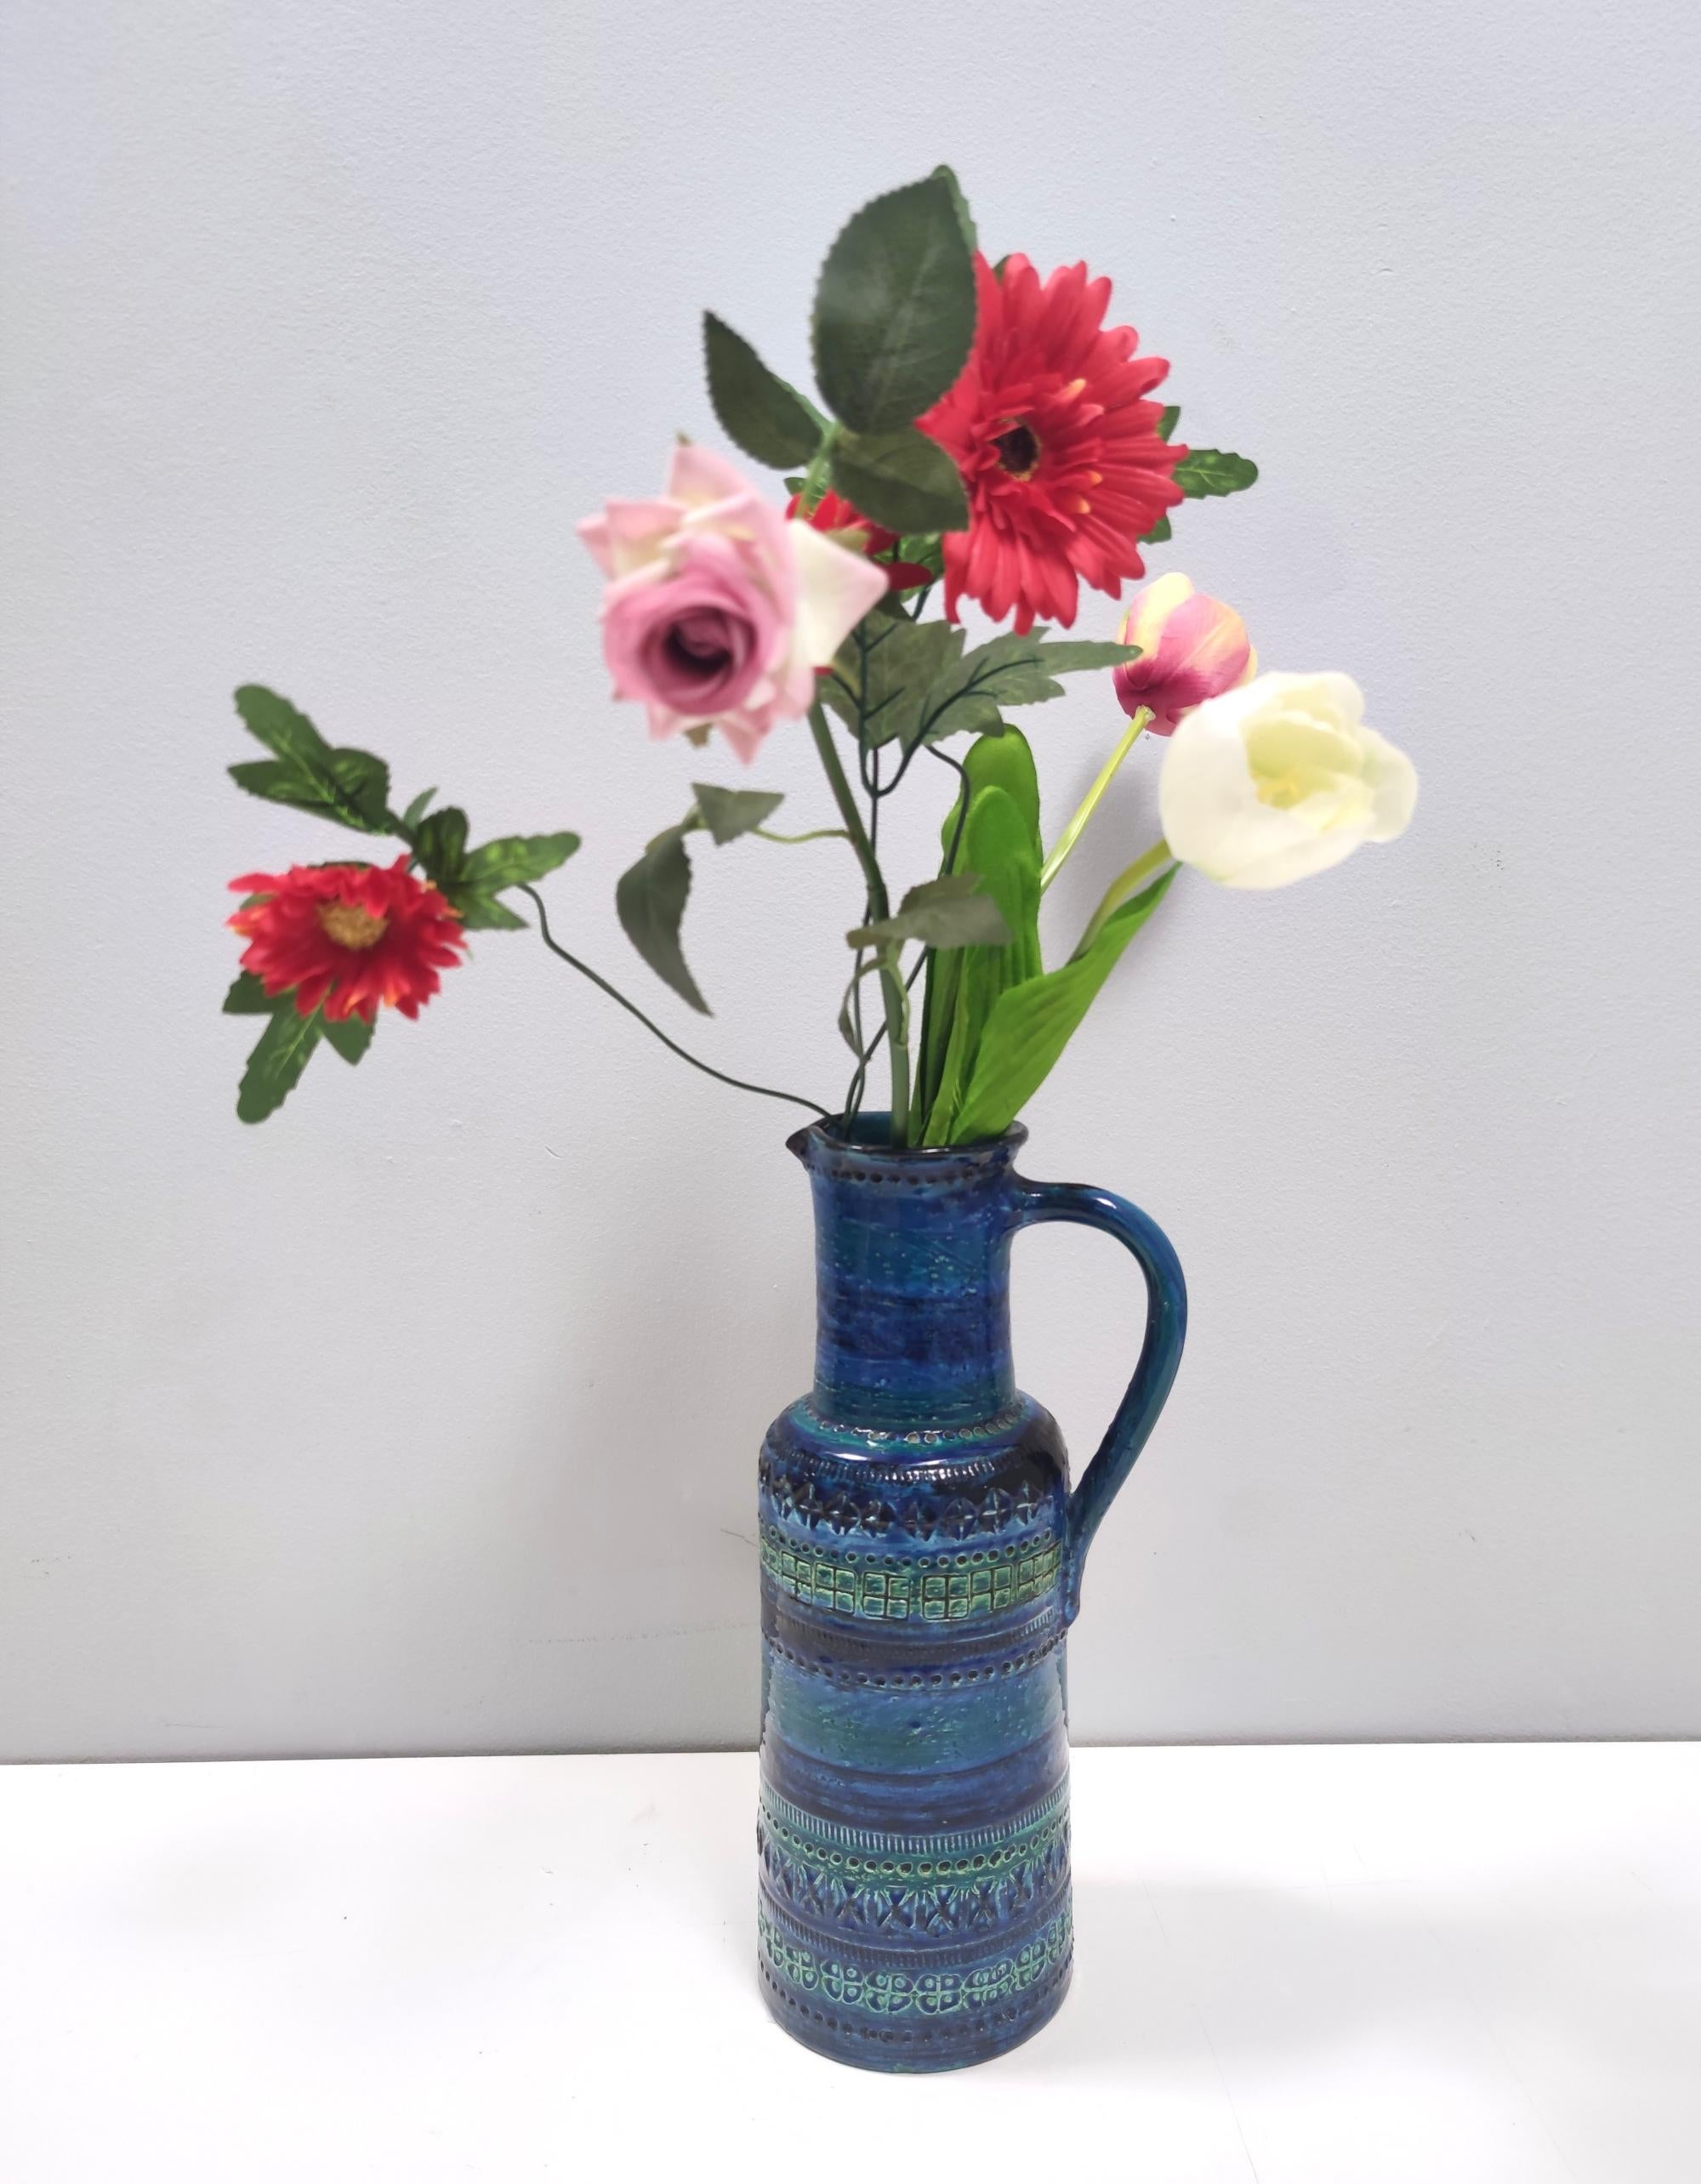 Dies ist eine blaue Vase aus Rimini aus den 1970er Jahren. Hergestellt in Italien.
Es wurde von Aldo Londi entworfen und von Flavia Montelupo, auch bekannt als Bitossi, hergestellt.
Bitossi wurde 1921 in Montelupo, einer Stadt in der Nähe von